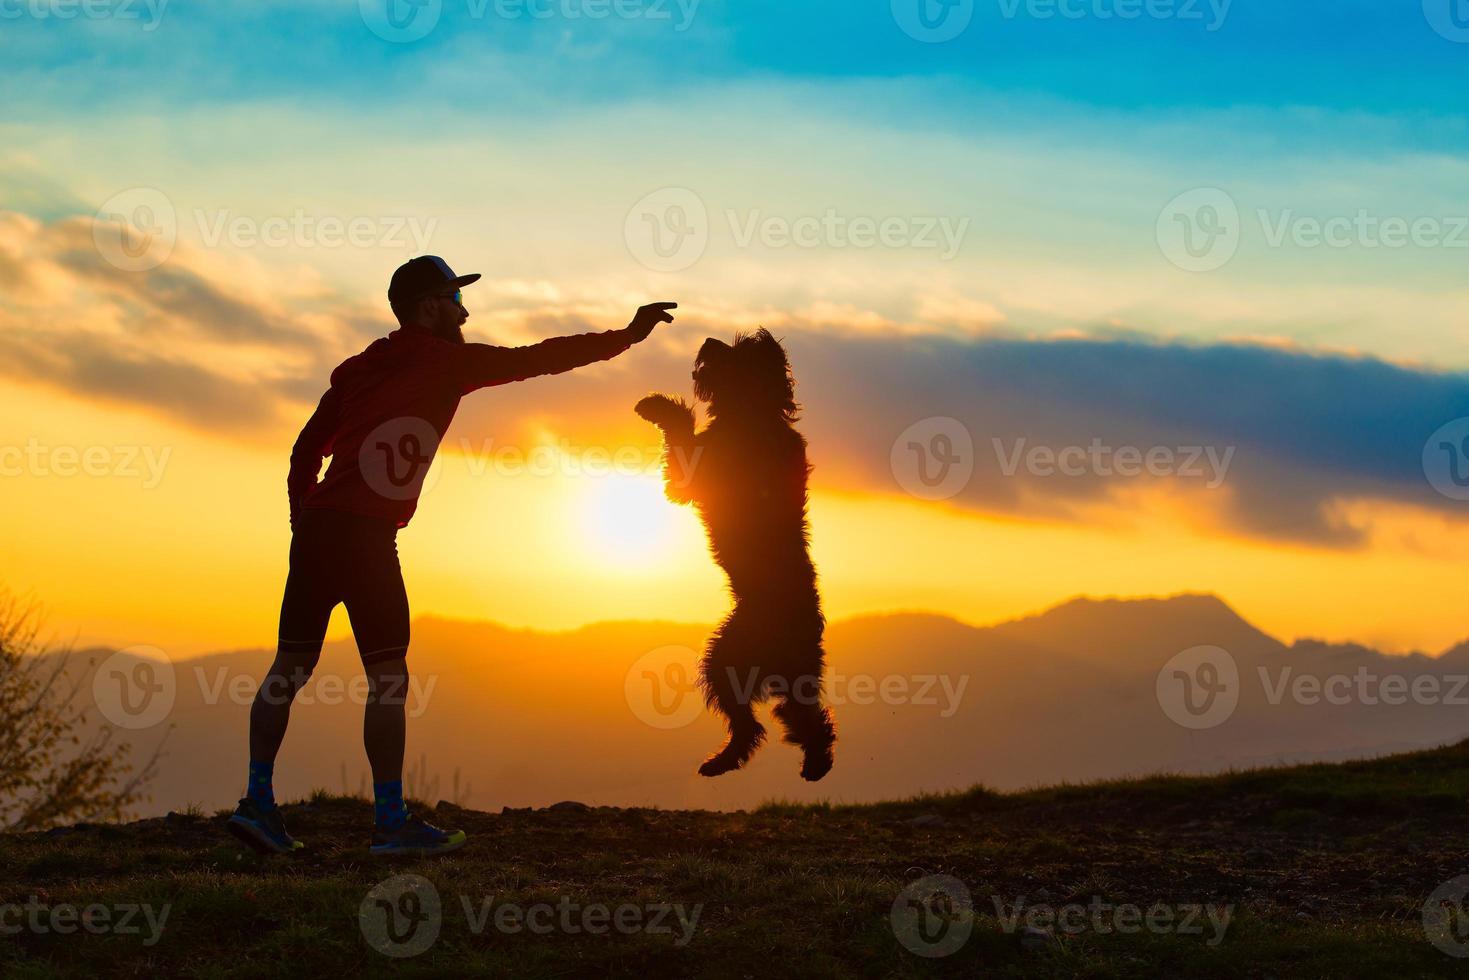 cachorro grande pulando para pegar um biscoito de uma silhueta de homem com fundo em montanhas coloridas do pôr do sol foto